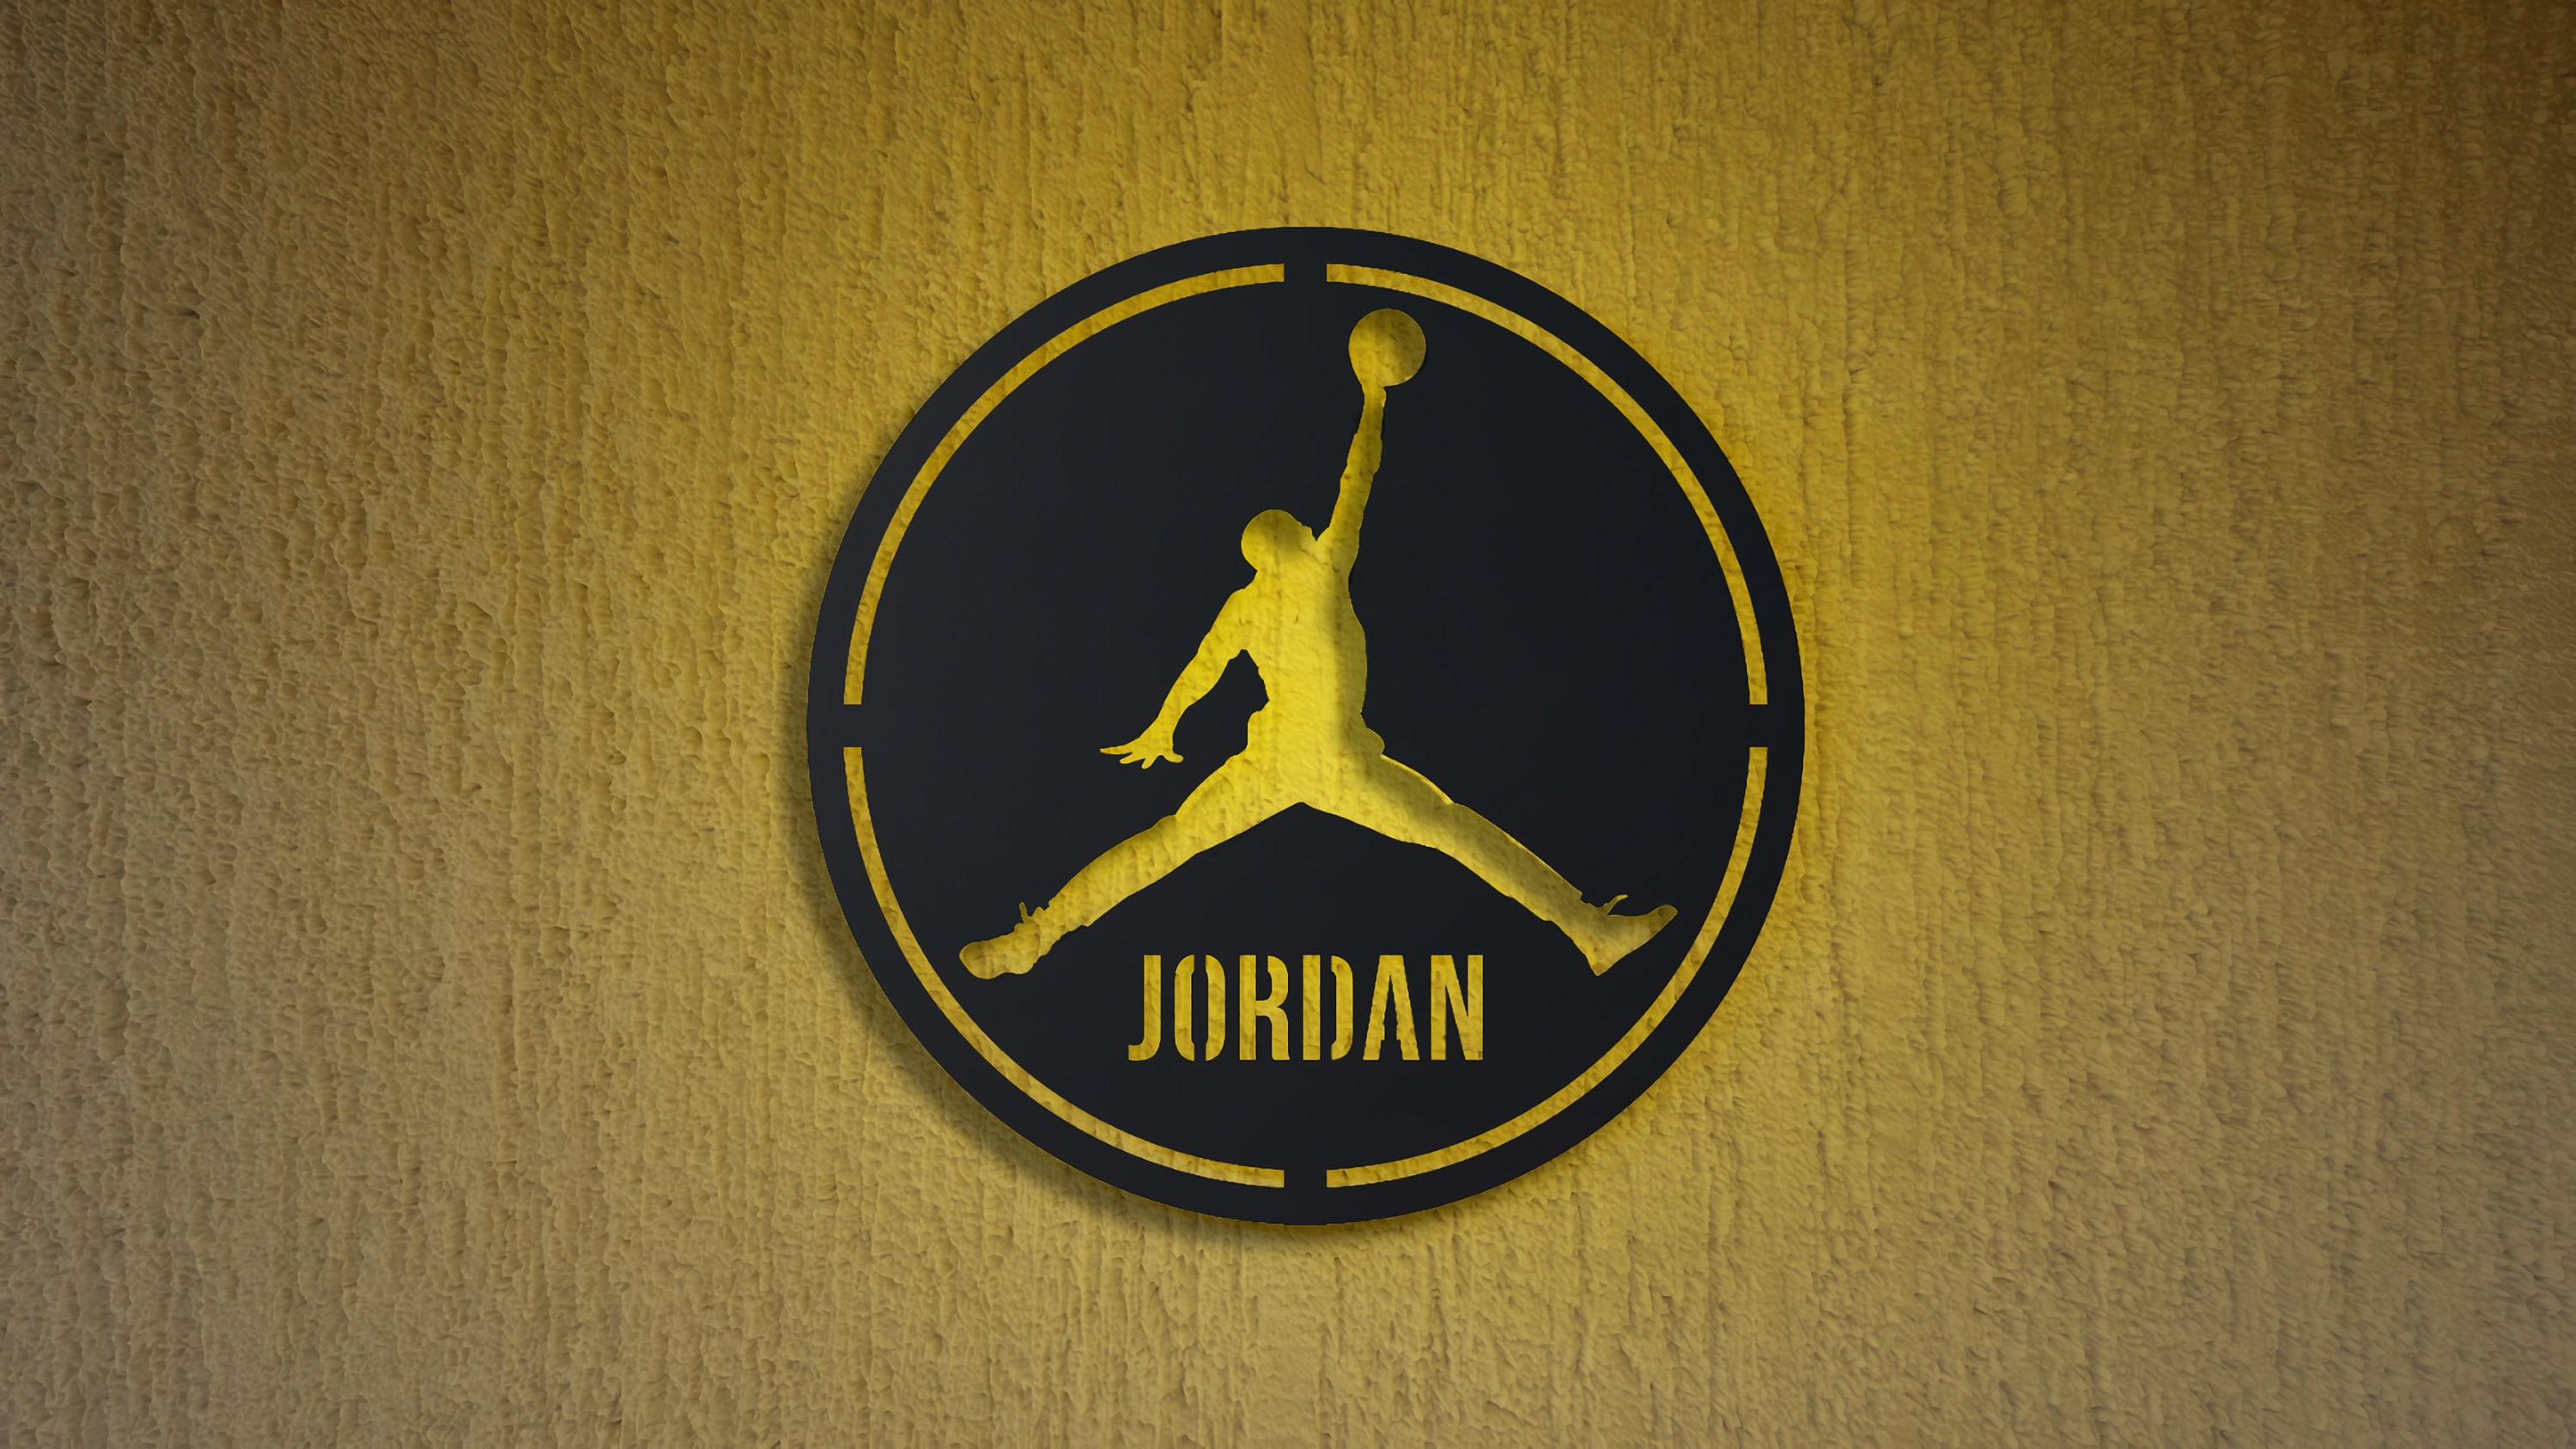 Michael Jordan Custom Led Sign Michael Jordan Wall Decor Nba Wall Decor Led Sign For Wall Michael Jordan Wall Art Jordan Neon Sign PT54123